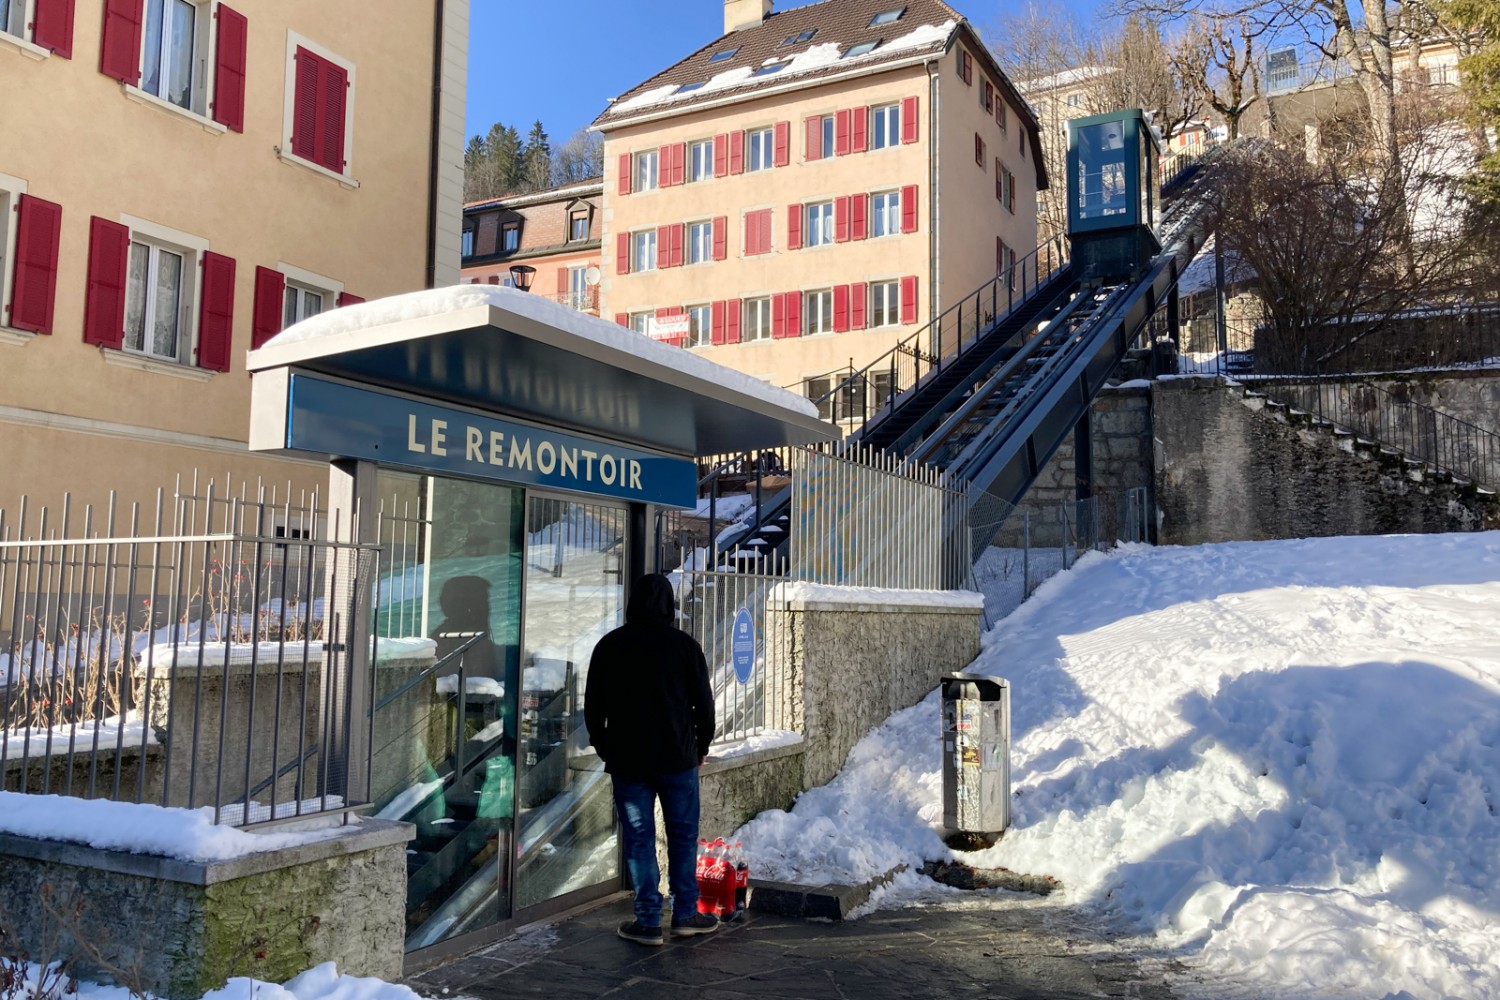 Der Remontoir, ein Schräglift, befördert die müden Wanderer vom Stadtzentrum hinauf zum Bahnhof von Le Locle. Bild: Markus Ruff